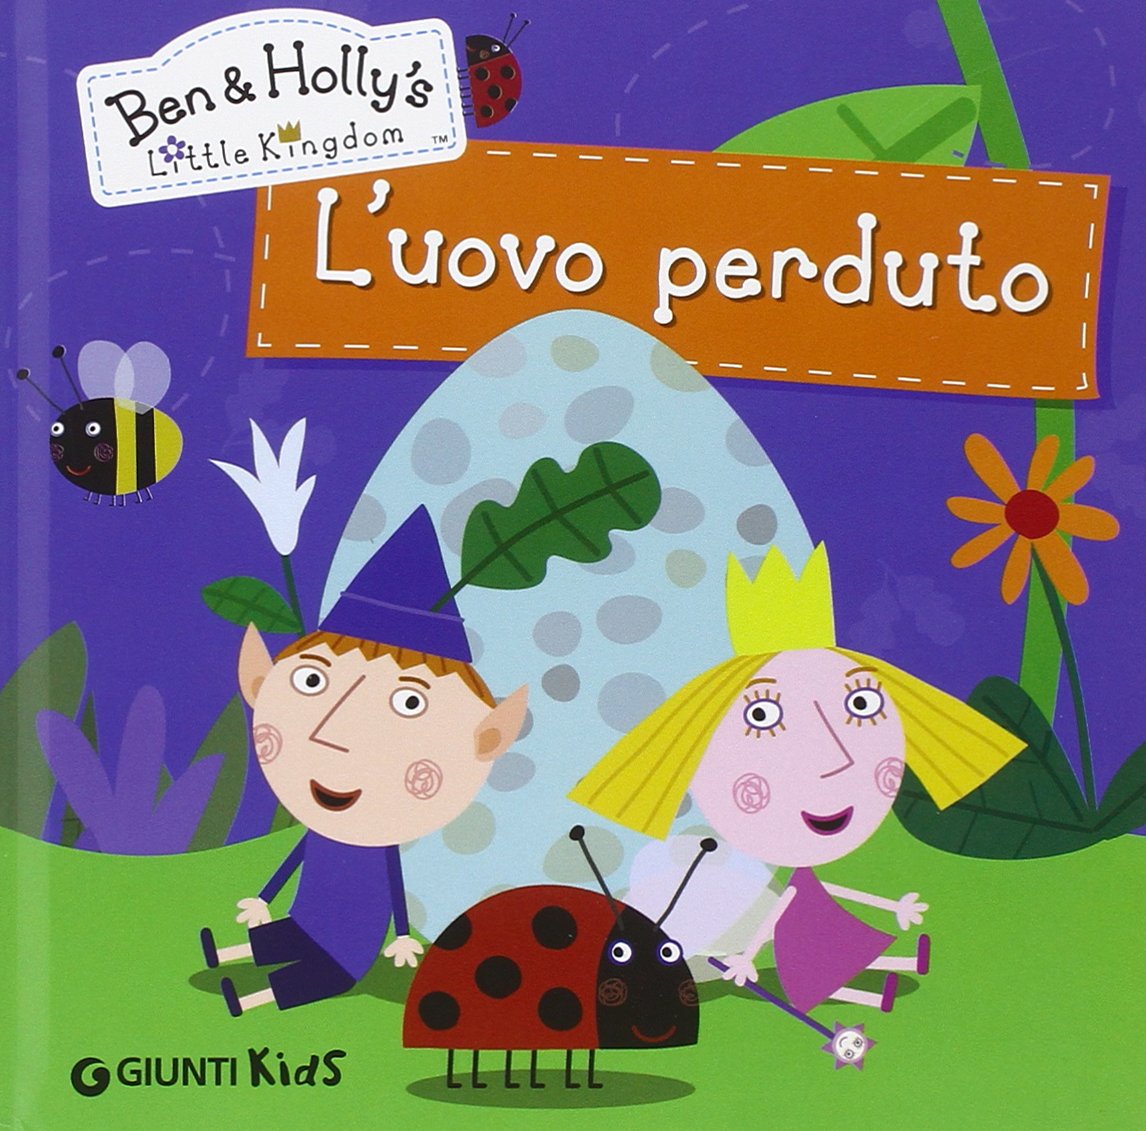 L’uovo perduto Il piccolo regno di Ben e Holly libri bambini da leggere o prima elementare